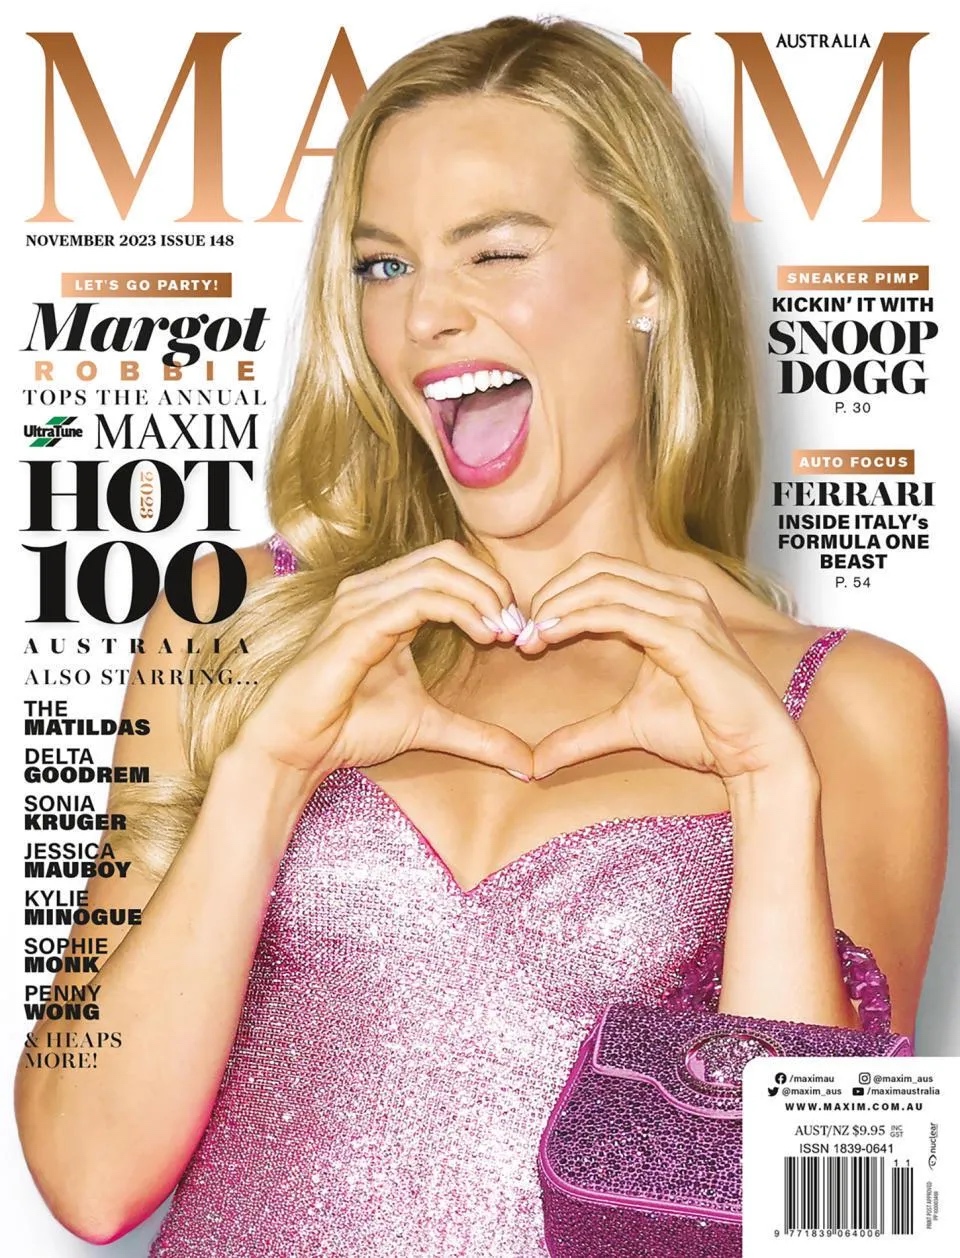 Марго Робби возглавила список самых сексуальных женщин года от журнала Maxim (фото) фото 1